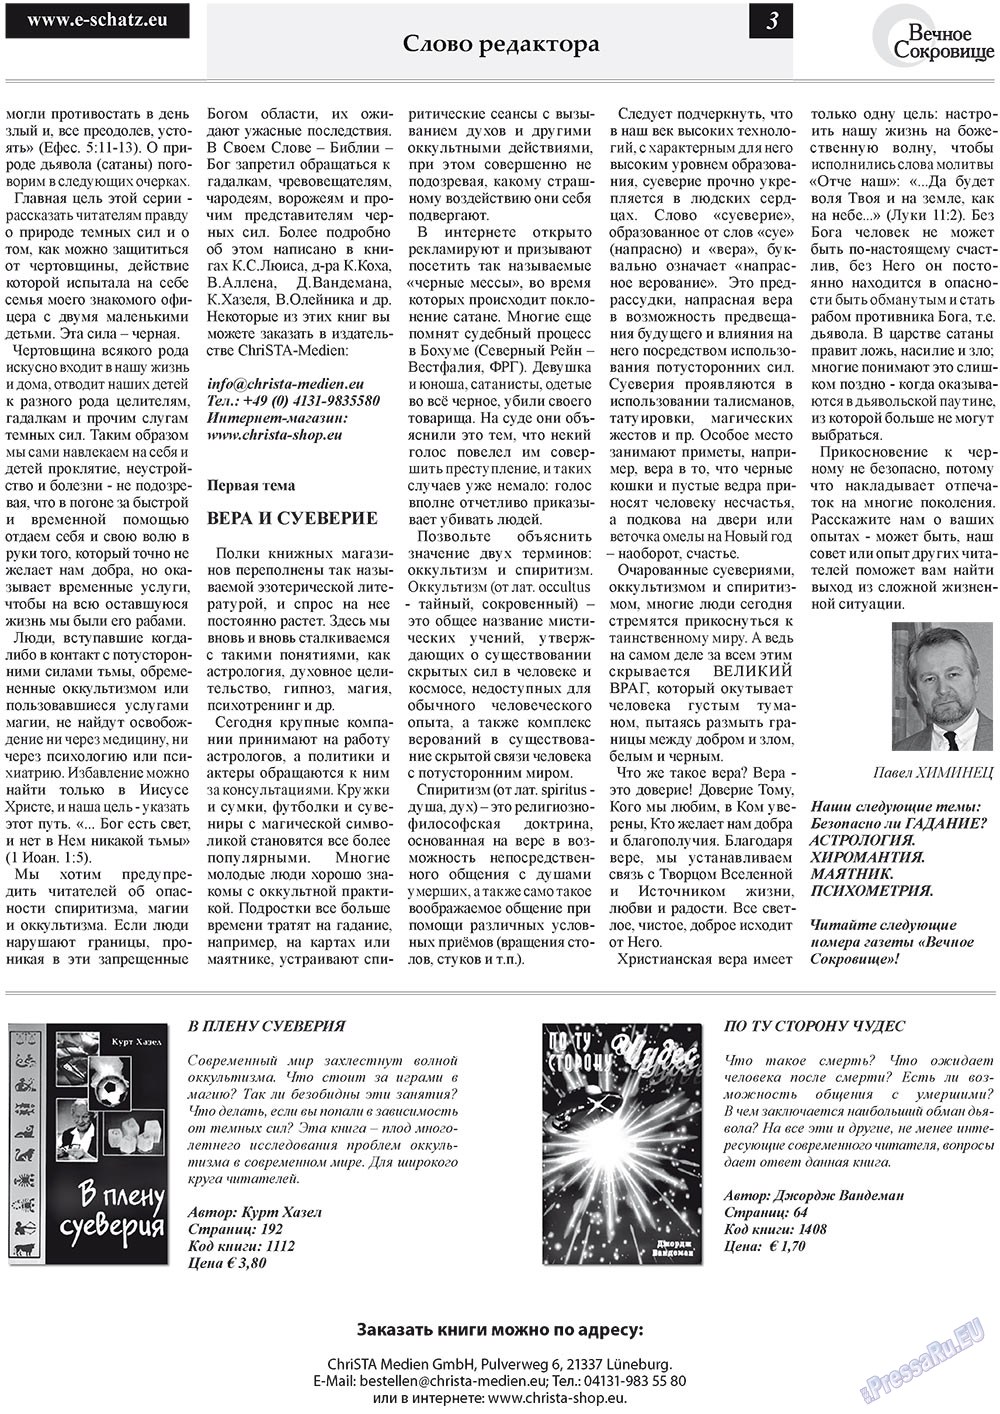 Вечное сокровище (газета). 2011 год, номер 4, стр. 3